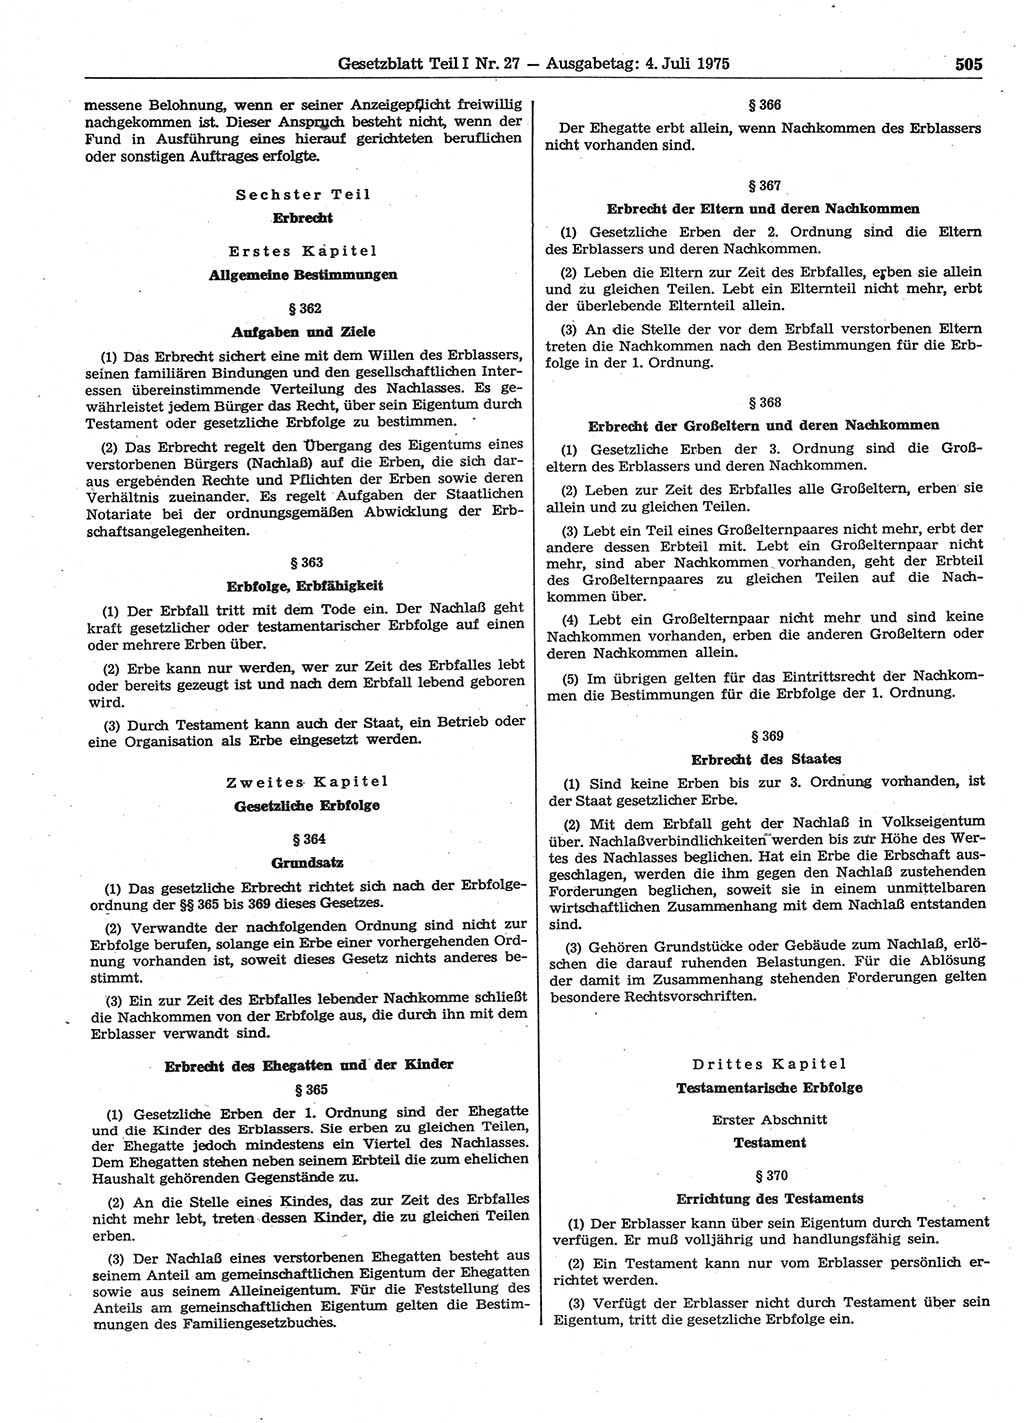 Gesetzblatt (GBl.) der Deutschen Demokratischen Republik (DDR) Teil Ⅰ 1975, Seite 505 (GBl. DDR Ⅰ 1975, S. 505)